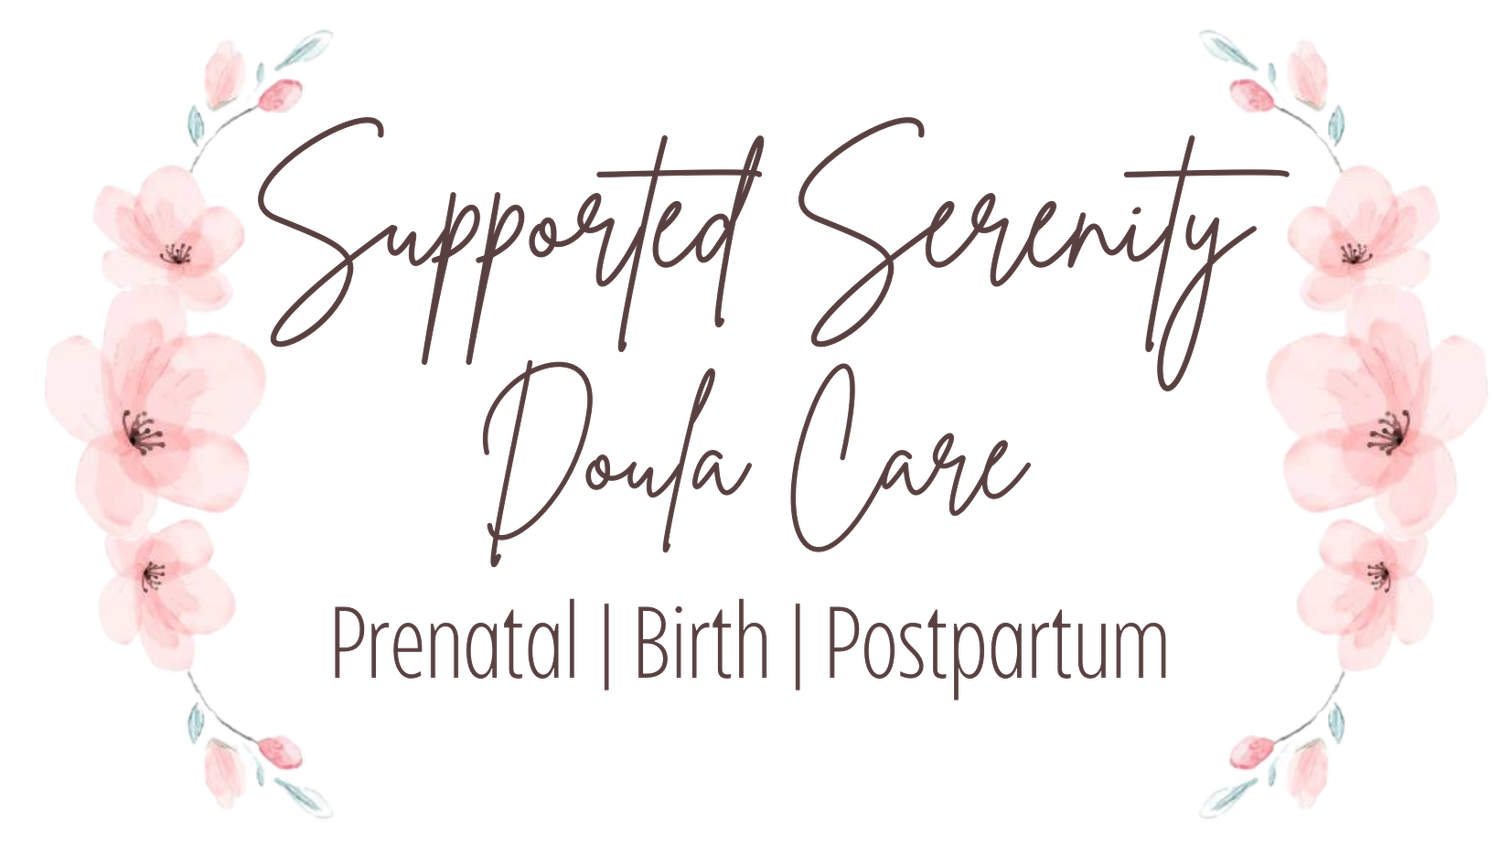 Supported Serenity Doula Care: Prenatal | Birth | Postpartum